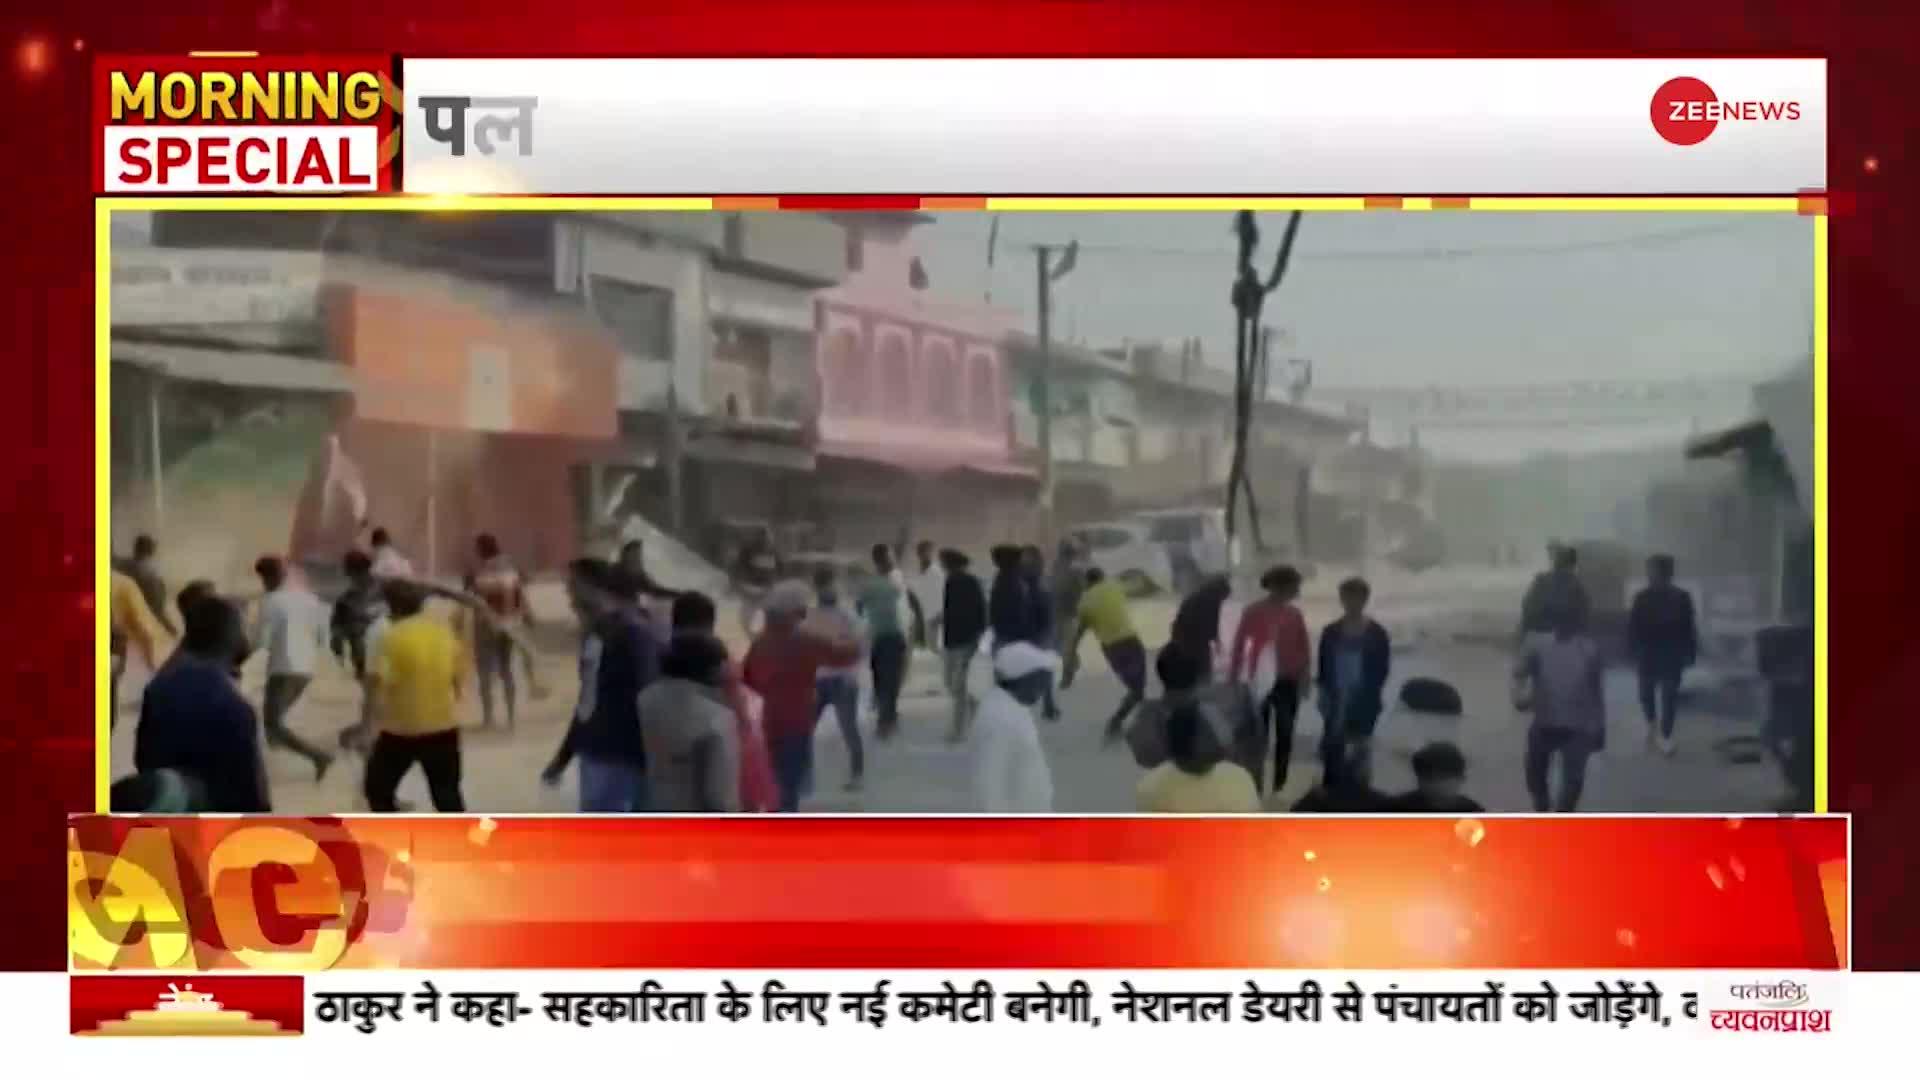 Jharkhand News: पलामू के पांकी में दो पक्षों में पत्थरबाजी और आगजनी, इलाके में धारा 144 लागू